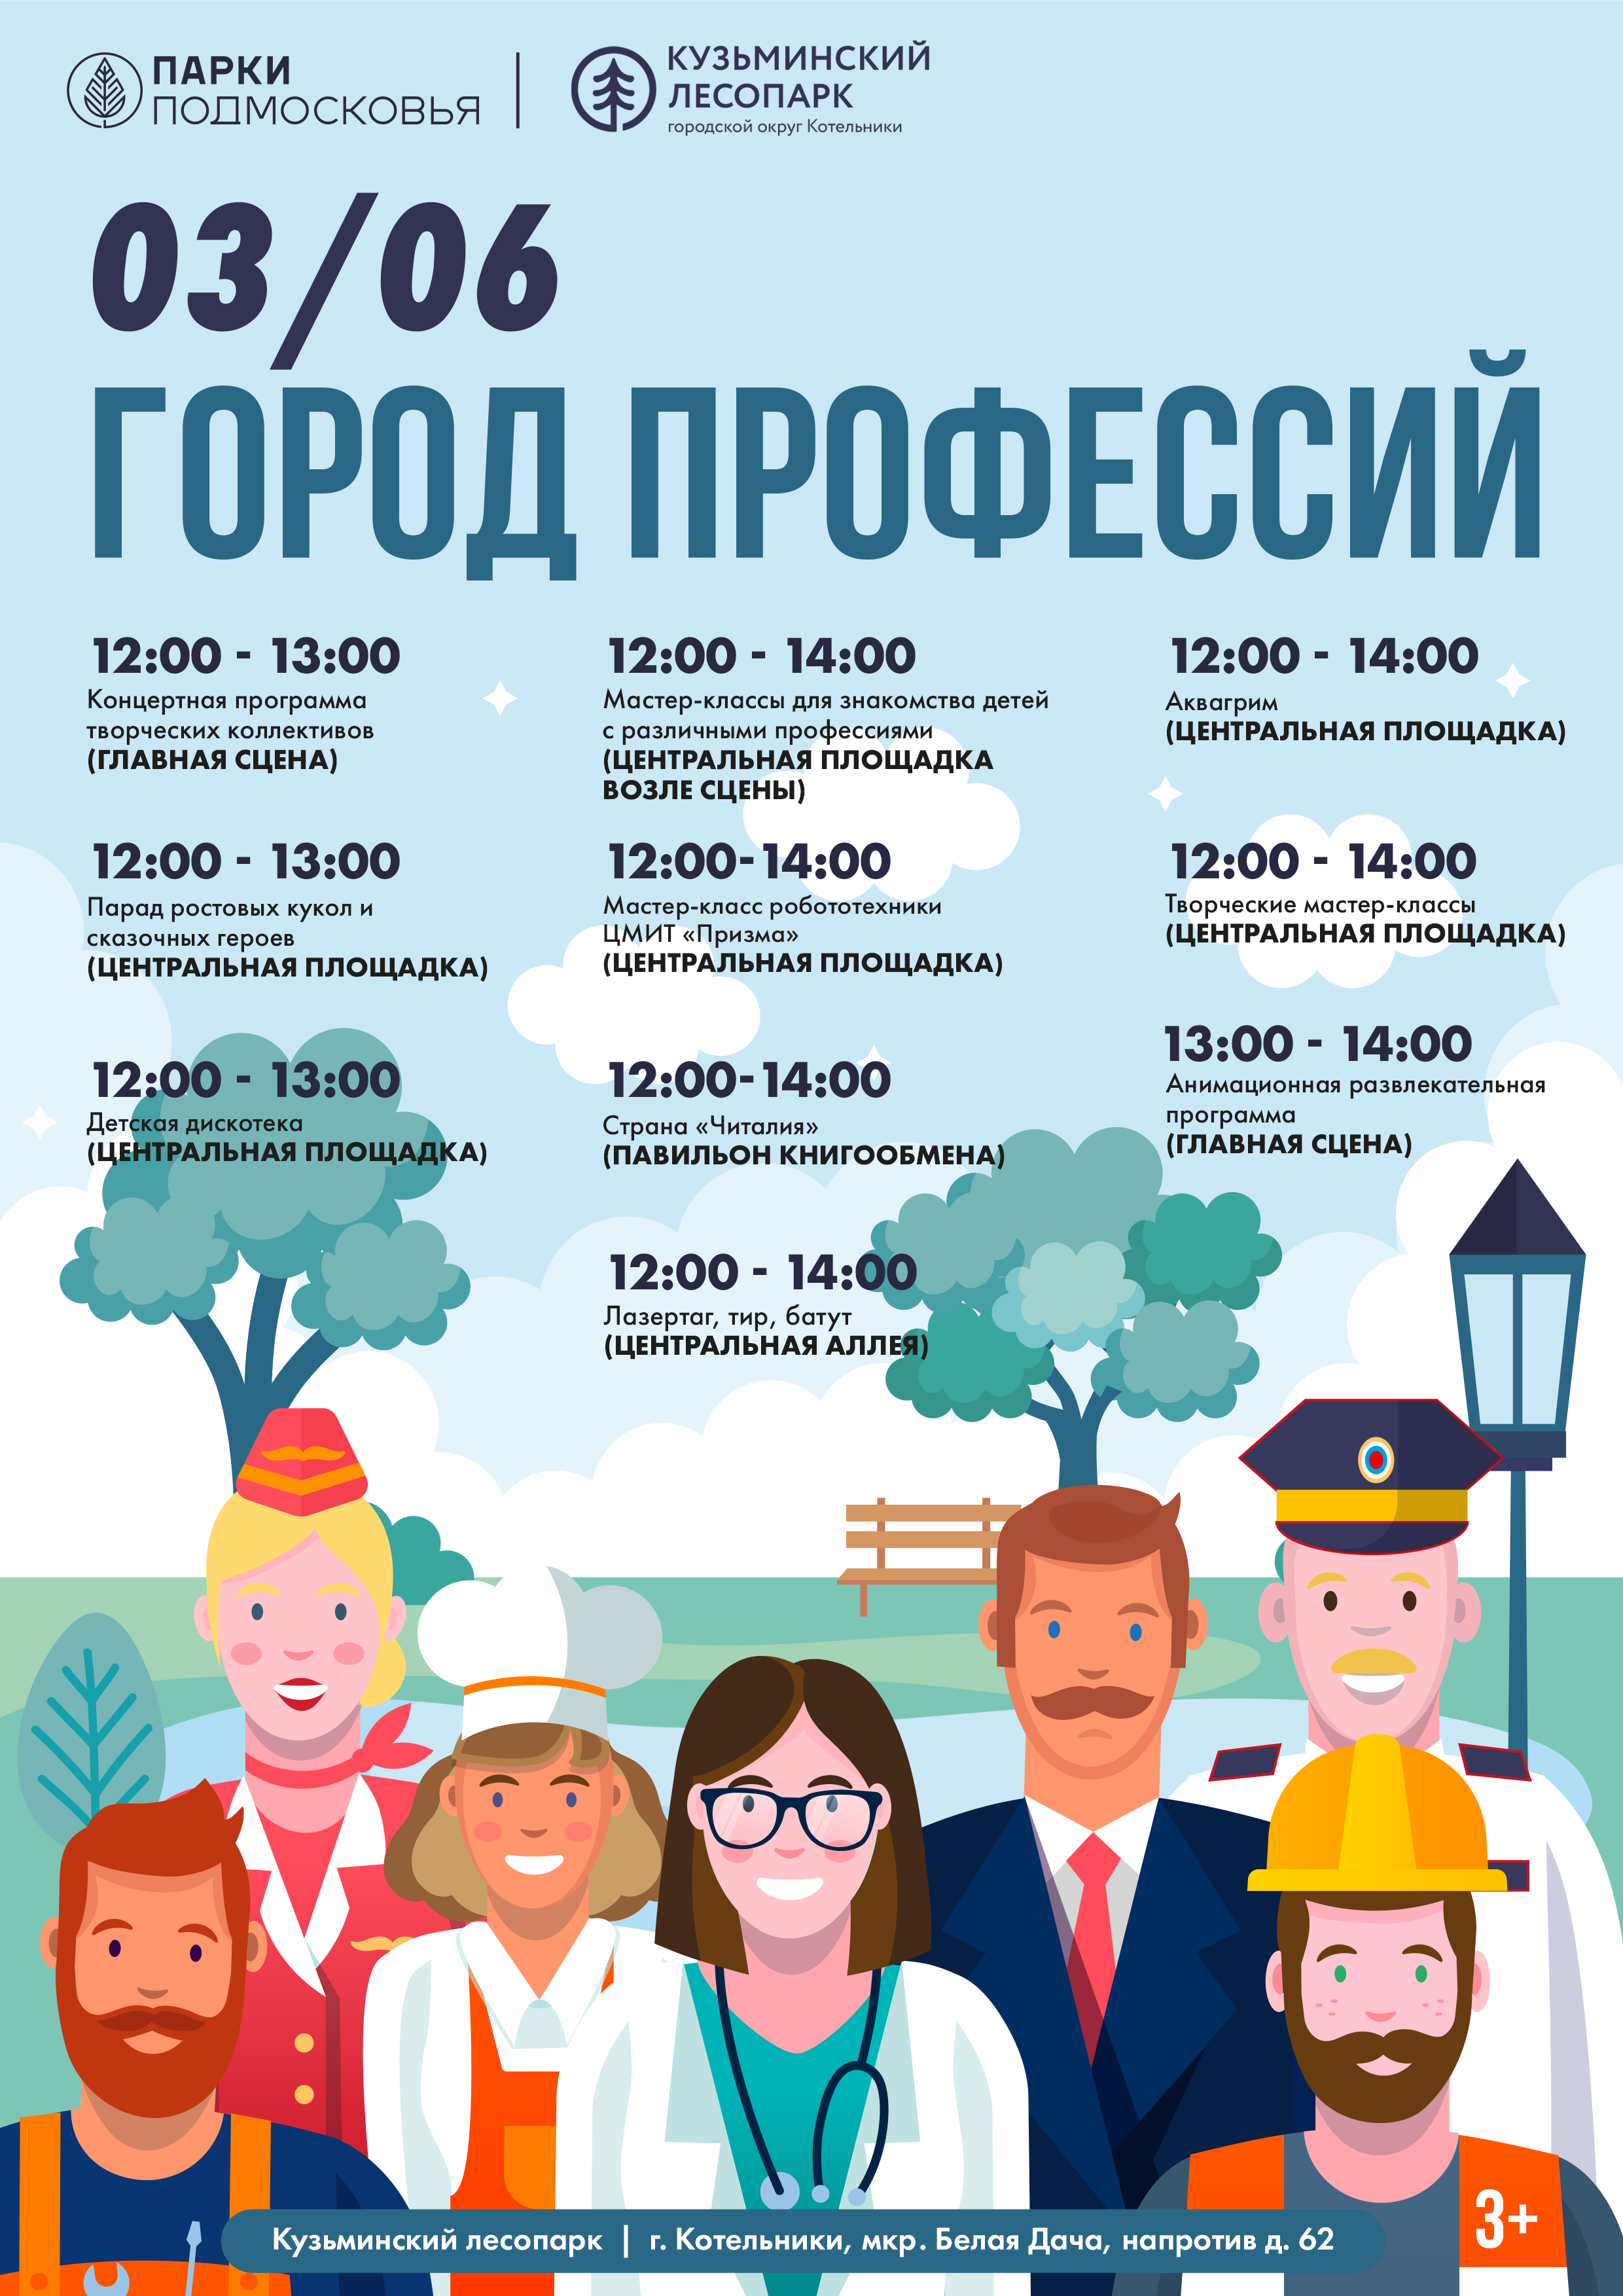 «Город профессий» в Кузьминском лесопарке